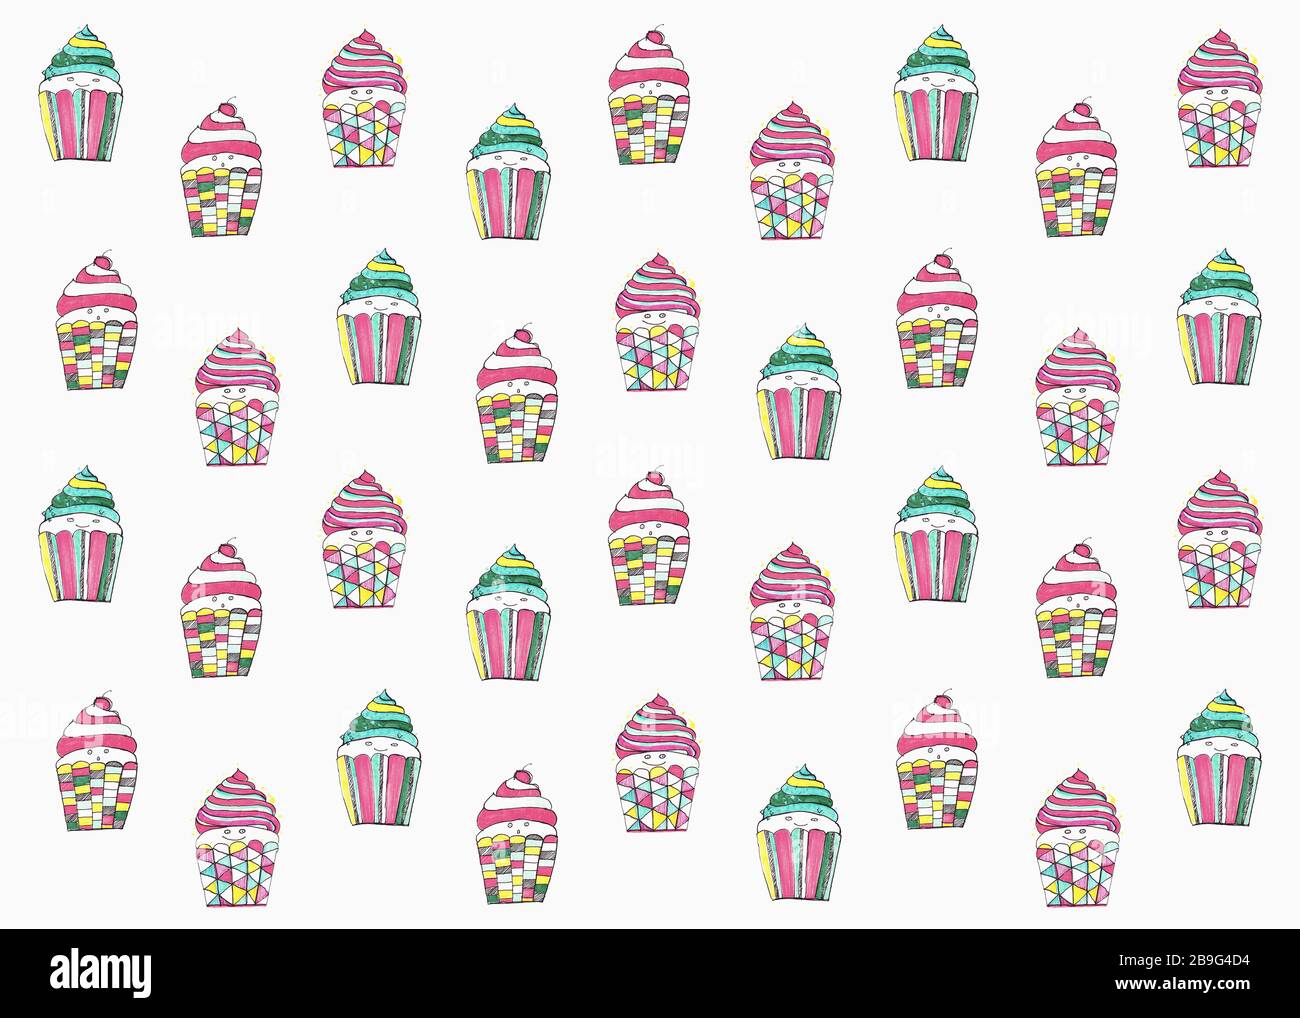 Cupcakes de couleur pastel sur fond blanc Banque D'Images